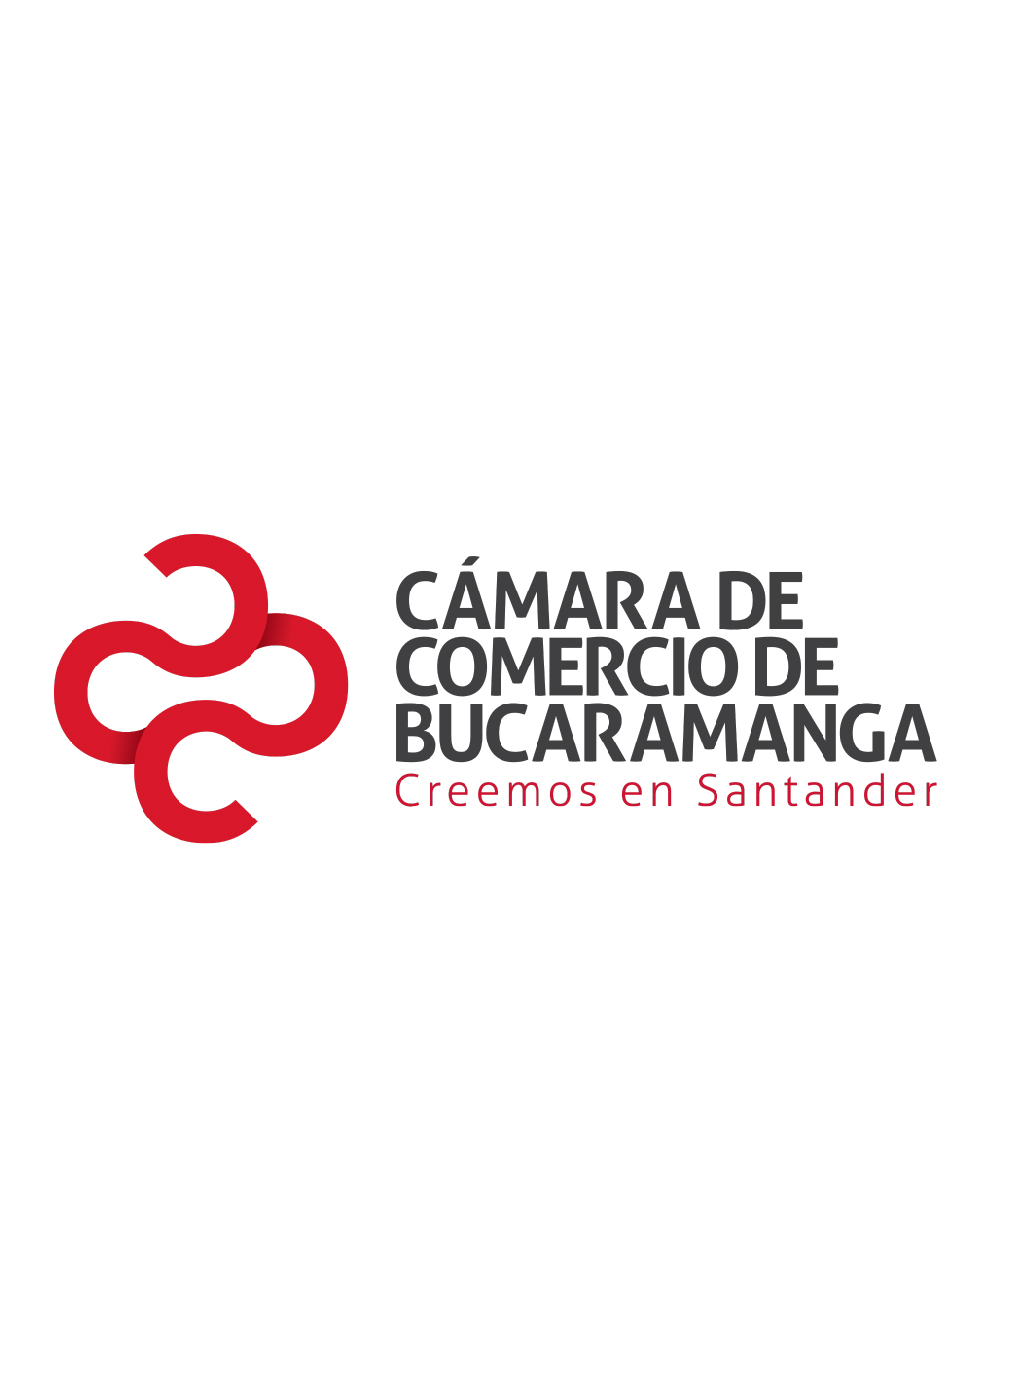 Nuevas empresas constituidas Santander 2014 - I semestre